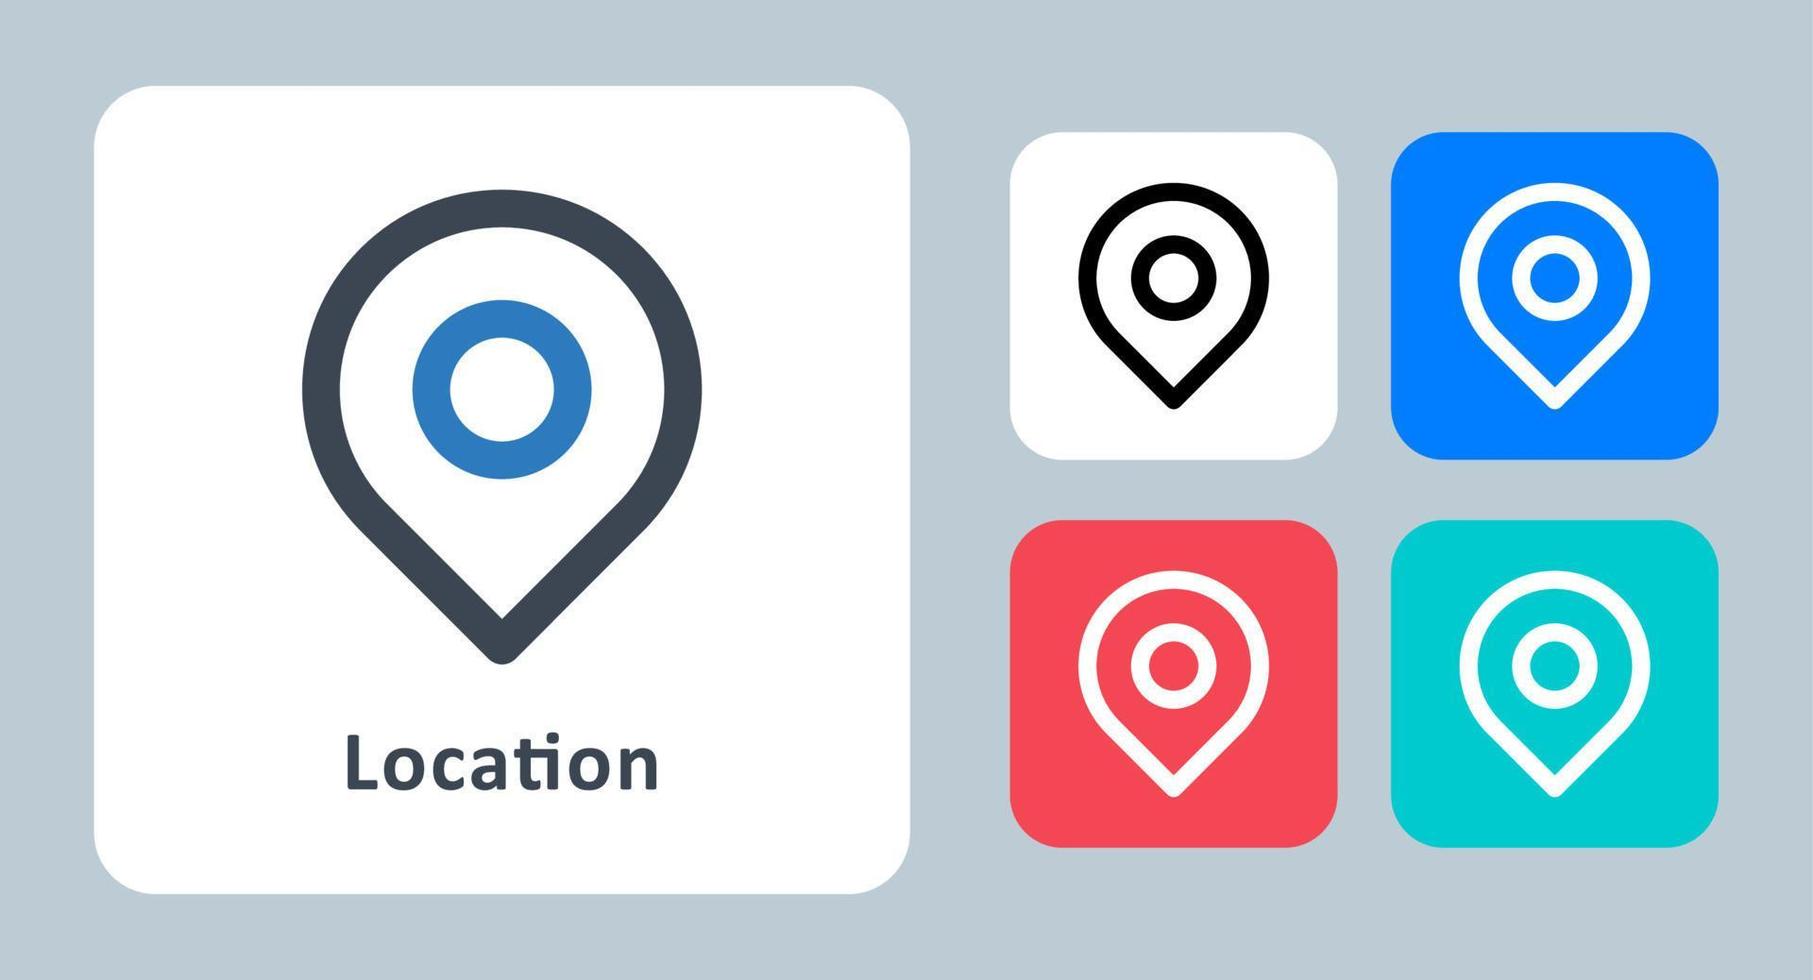 icono de ubicación - ilustración vectorial. ubicación, mapa, gps, navegación, pin, dirección, marcador, puntero, línea, contorno, plano, iconos. vector